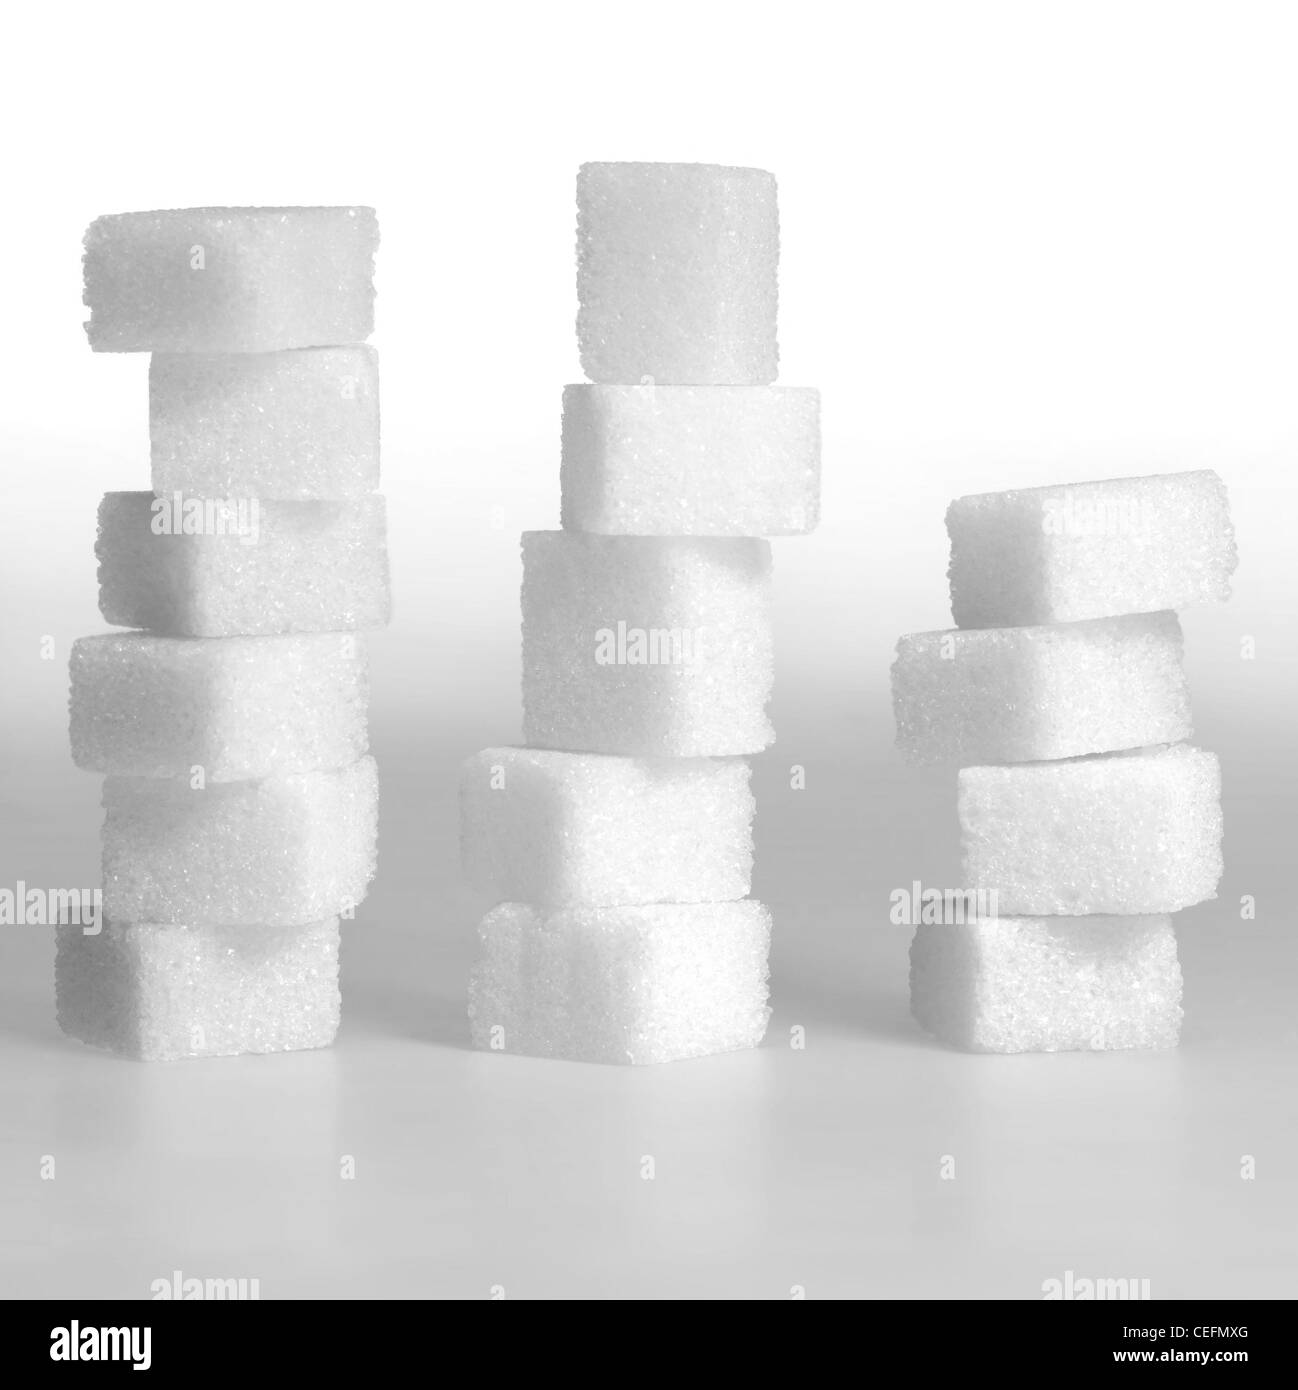 Studio fotografico di grumo 3 pile di zucchero in leggero pendio indietro Foto Stock